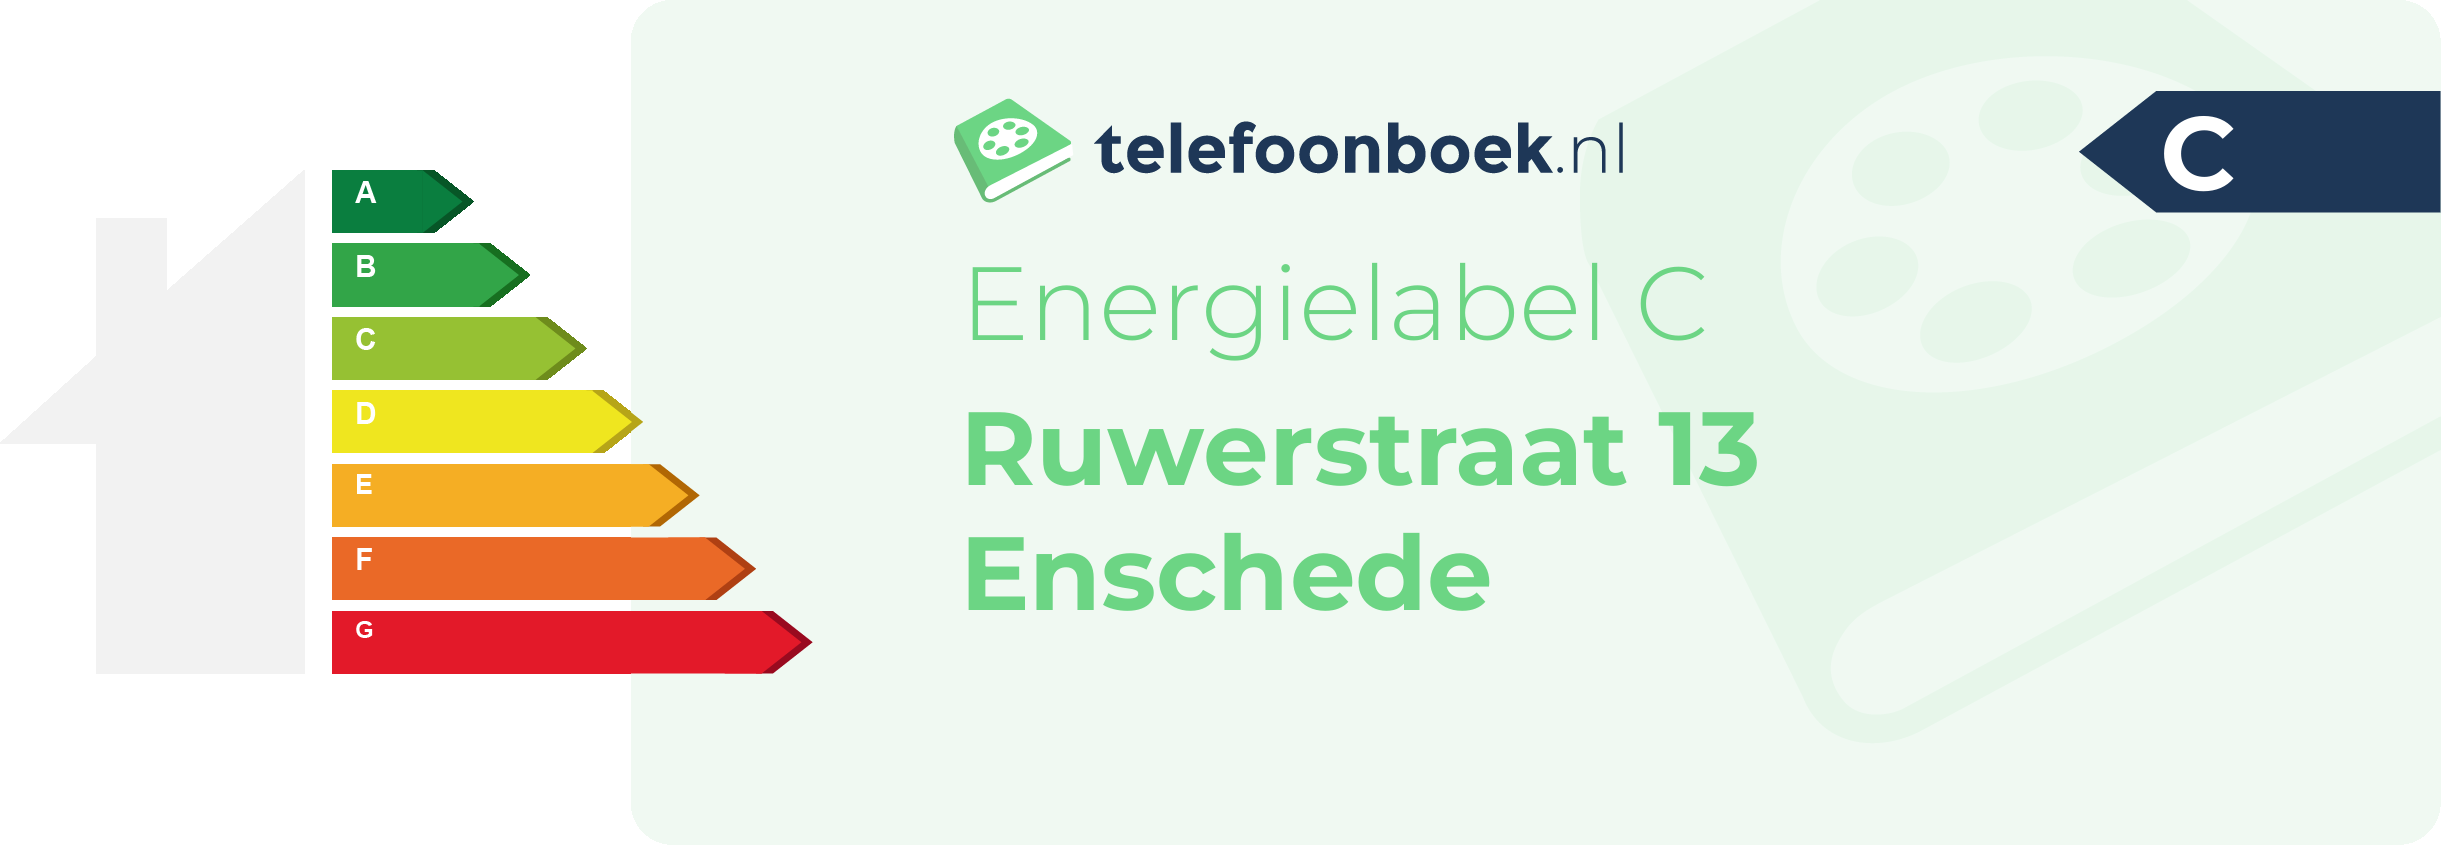 Energielabel Ruwerstraat 13 Enschede